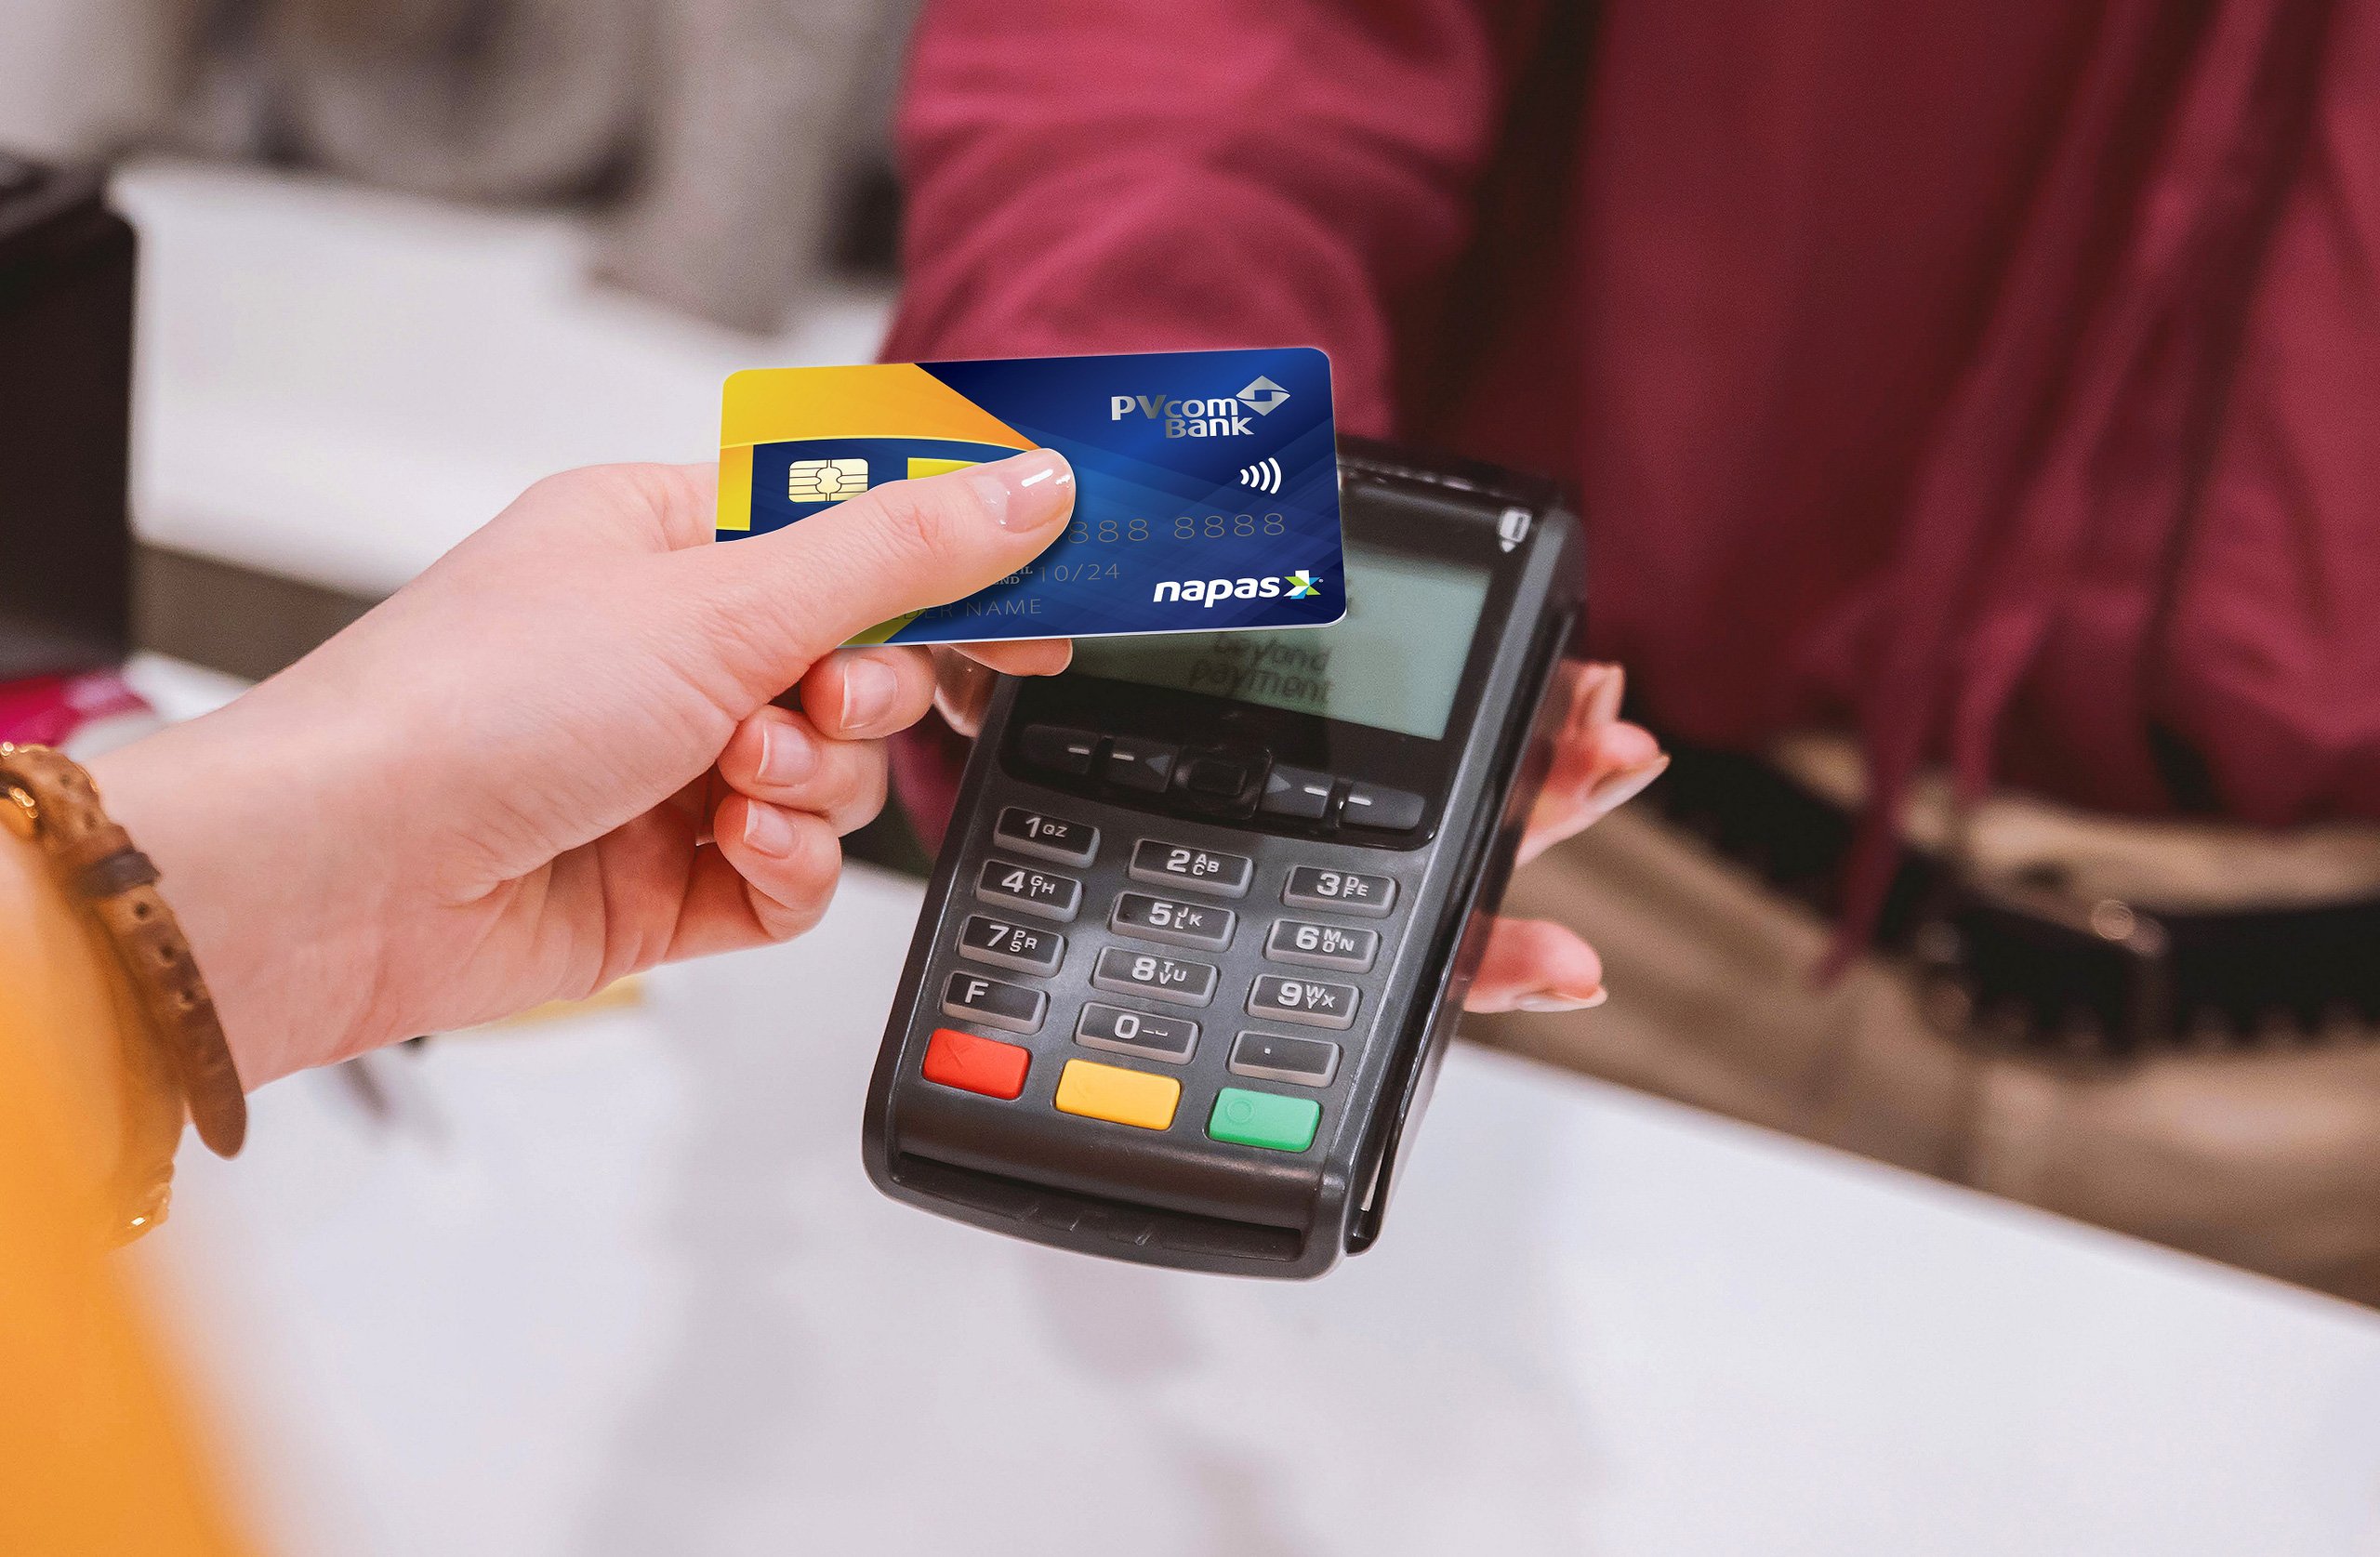 Cuối tháng 3, các ngân hàng sẽ chỉ phát hành thẻ ATM gắn chip, loại thẻ này có ưu điểm gì mà lại có sự chuyển đổi này? - Ảnh 4.